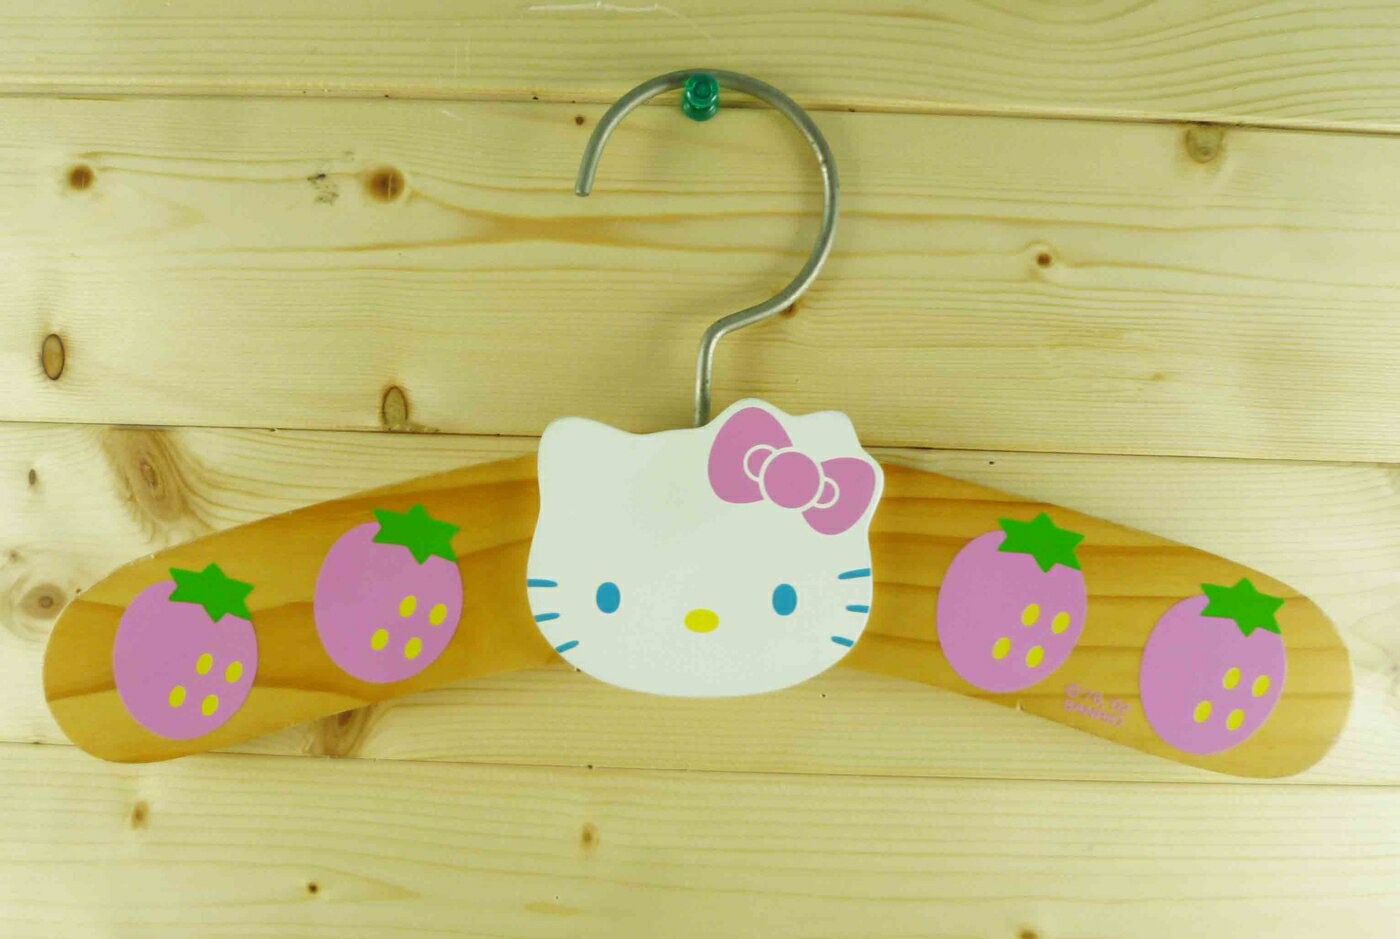 【震撼精品百貨】Hello Kitty 凱蒂貓 衣架-草莓圖案【共1款】 震撼日式精品百貨